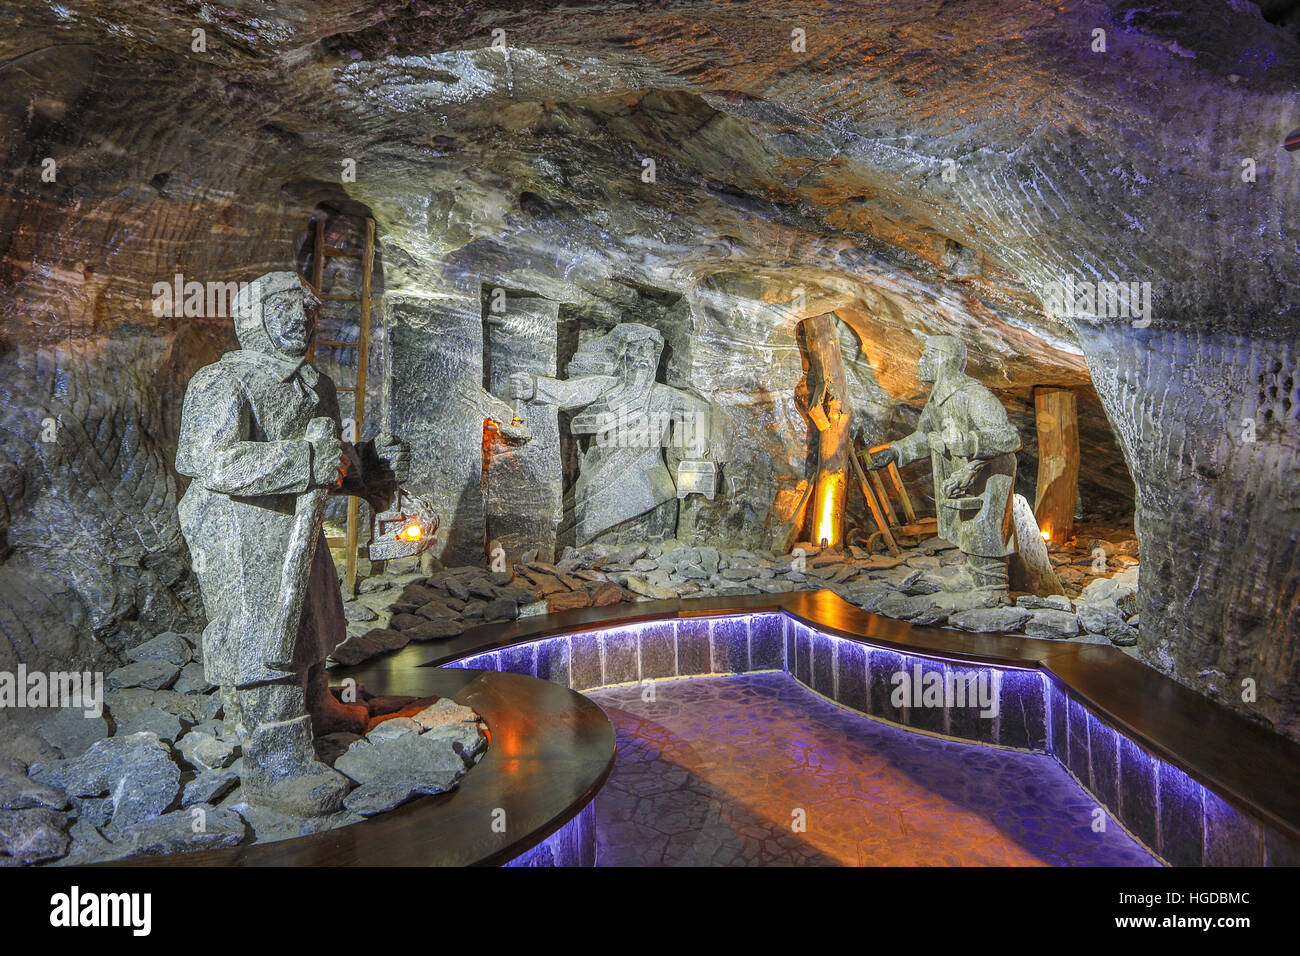 Salt Mines in Wielizka, Poland Stock Photo